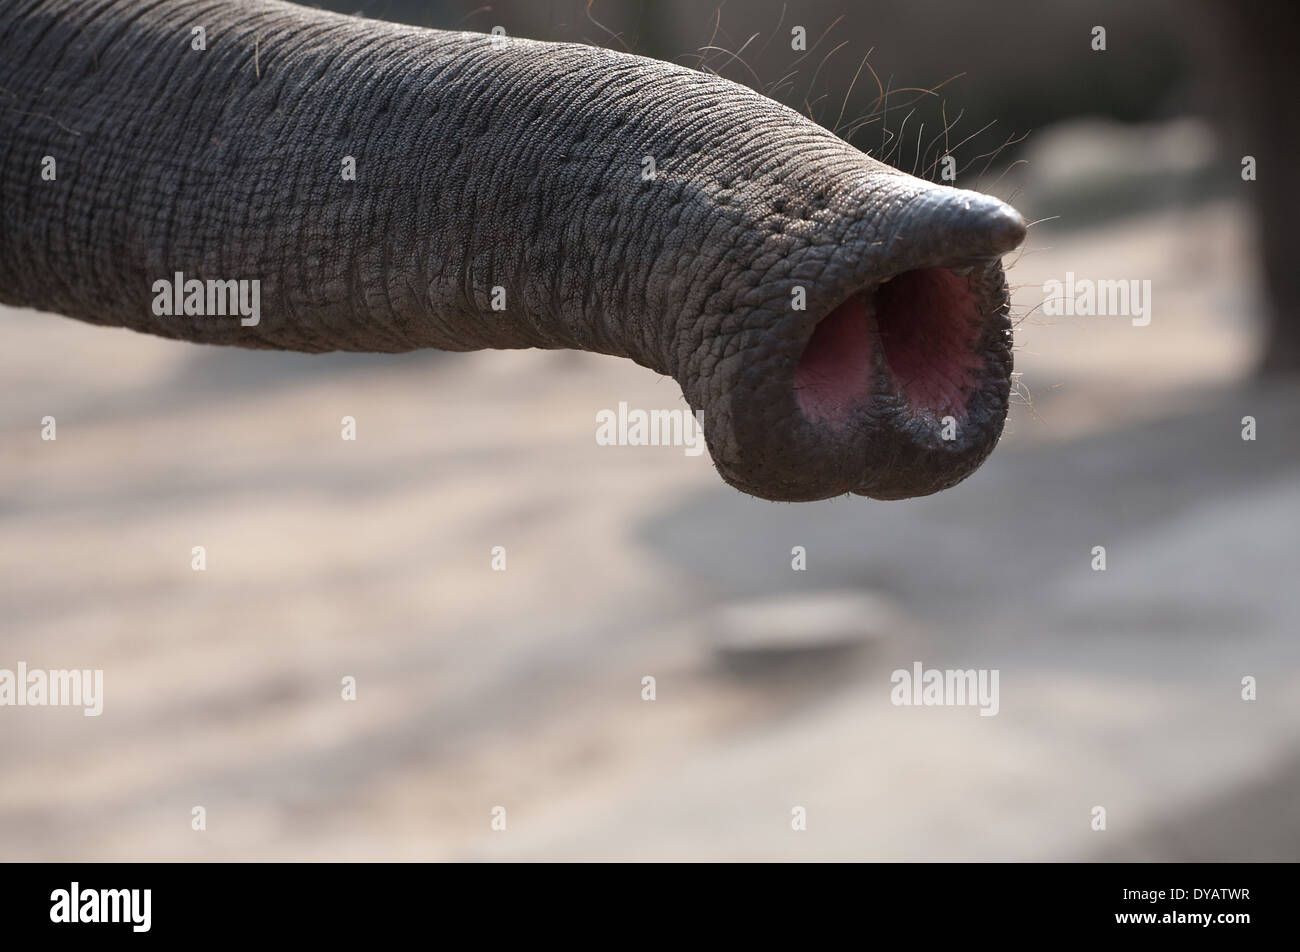 Detalle de la Trompa de Elefante closeup vista con dos orificios nasales Foto de stock